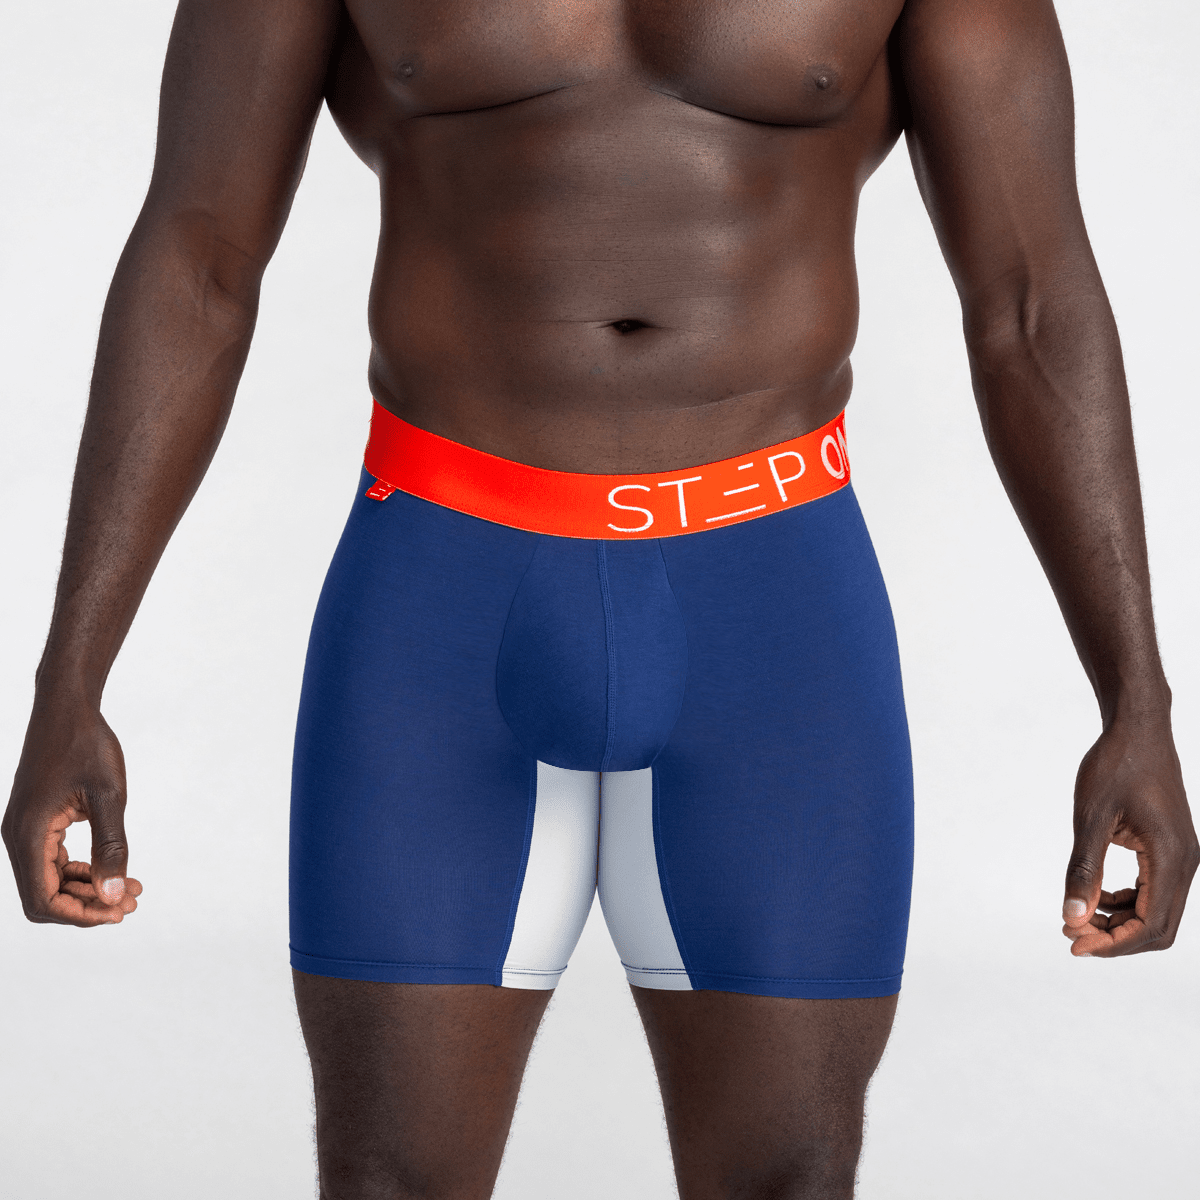 Blue Men's Boxer Brief Underwear